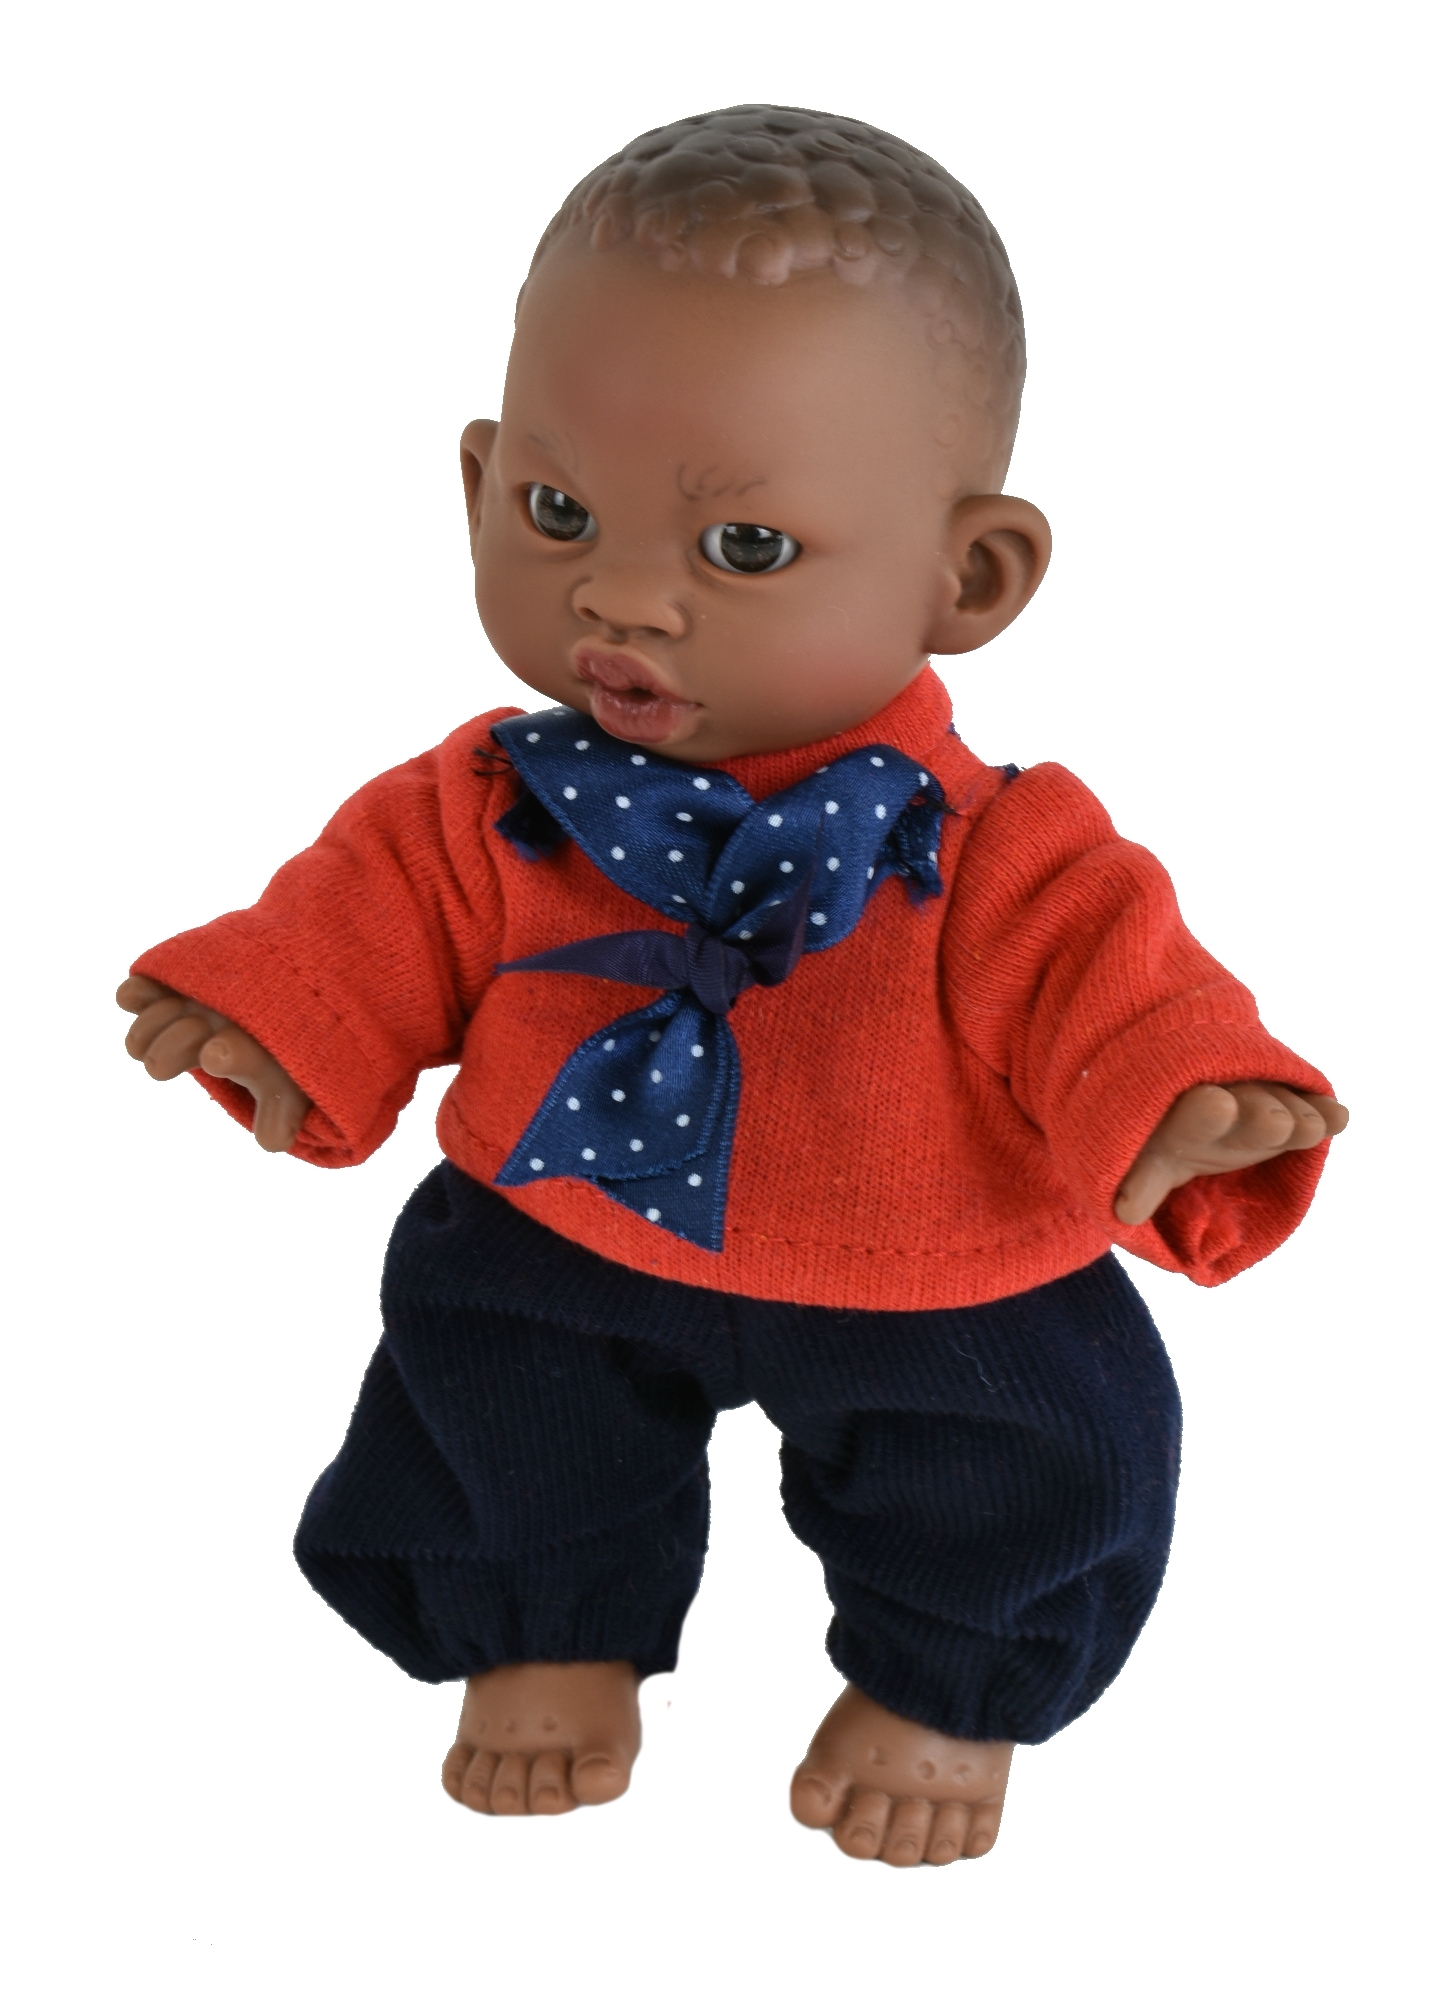 Кукла  Lamagik Джестито Инфант 18 см, в красной кофте с бантом, темнокожий 10000U lamagik s l кукла джестито инфант в светло розовом свитере смеется 18 см